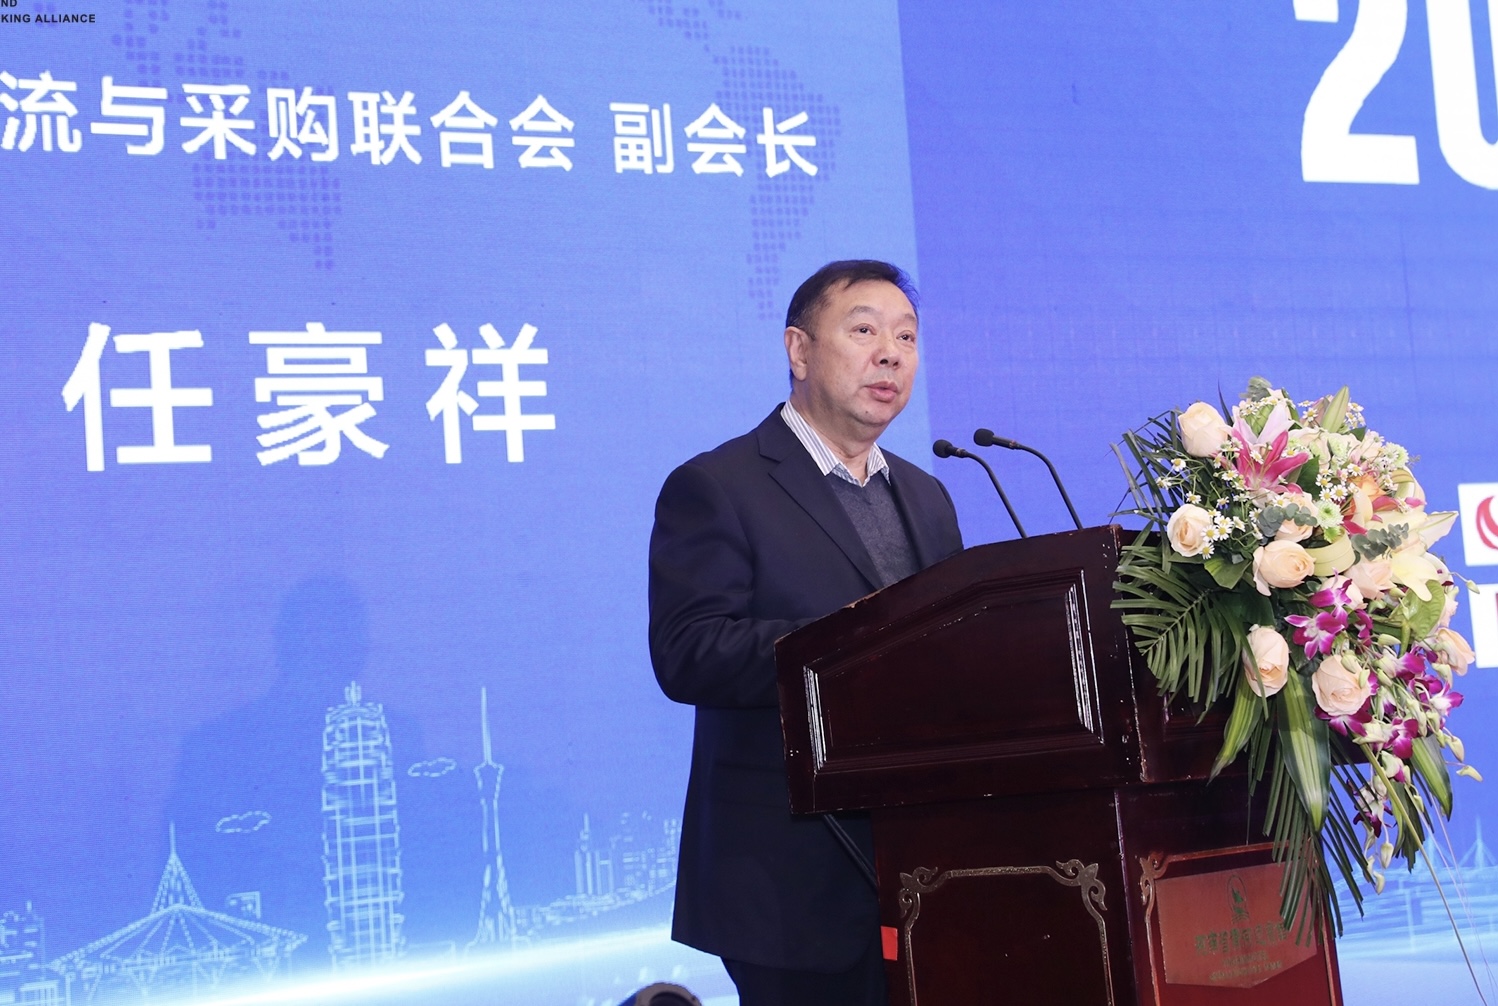 携手金融科技 共筑数字经济 2020第四届中国商贸物流银行联盟峰会在郑举办